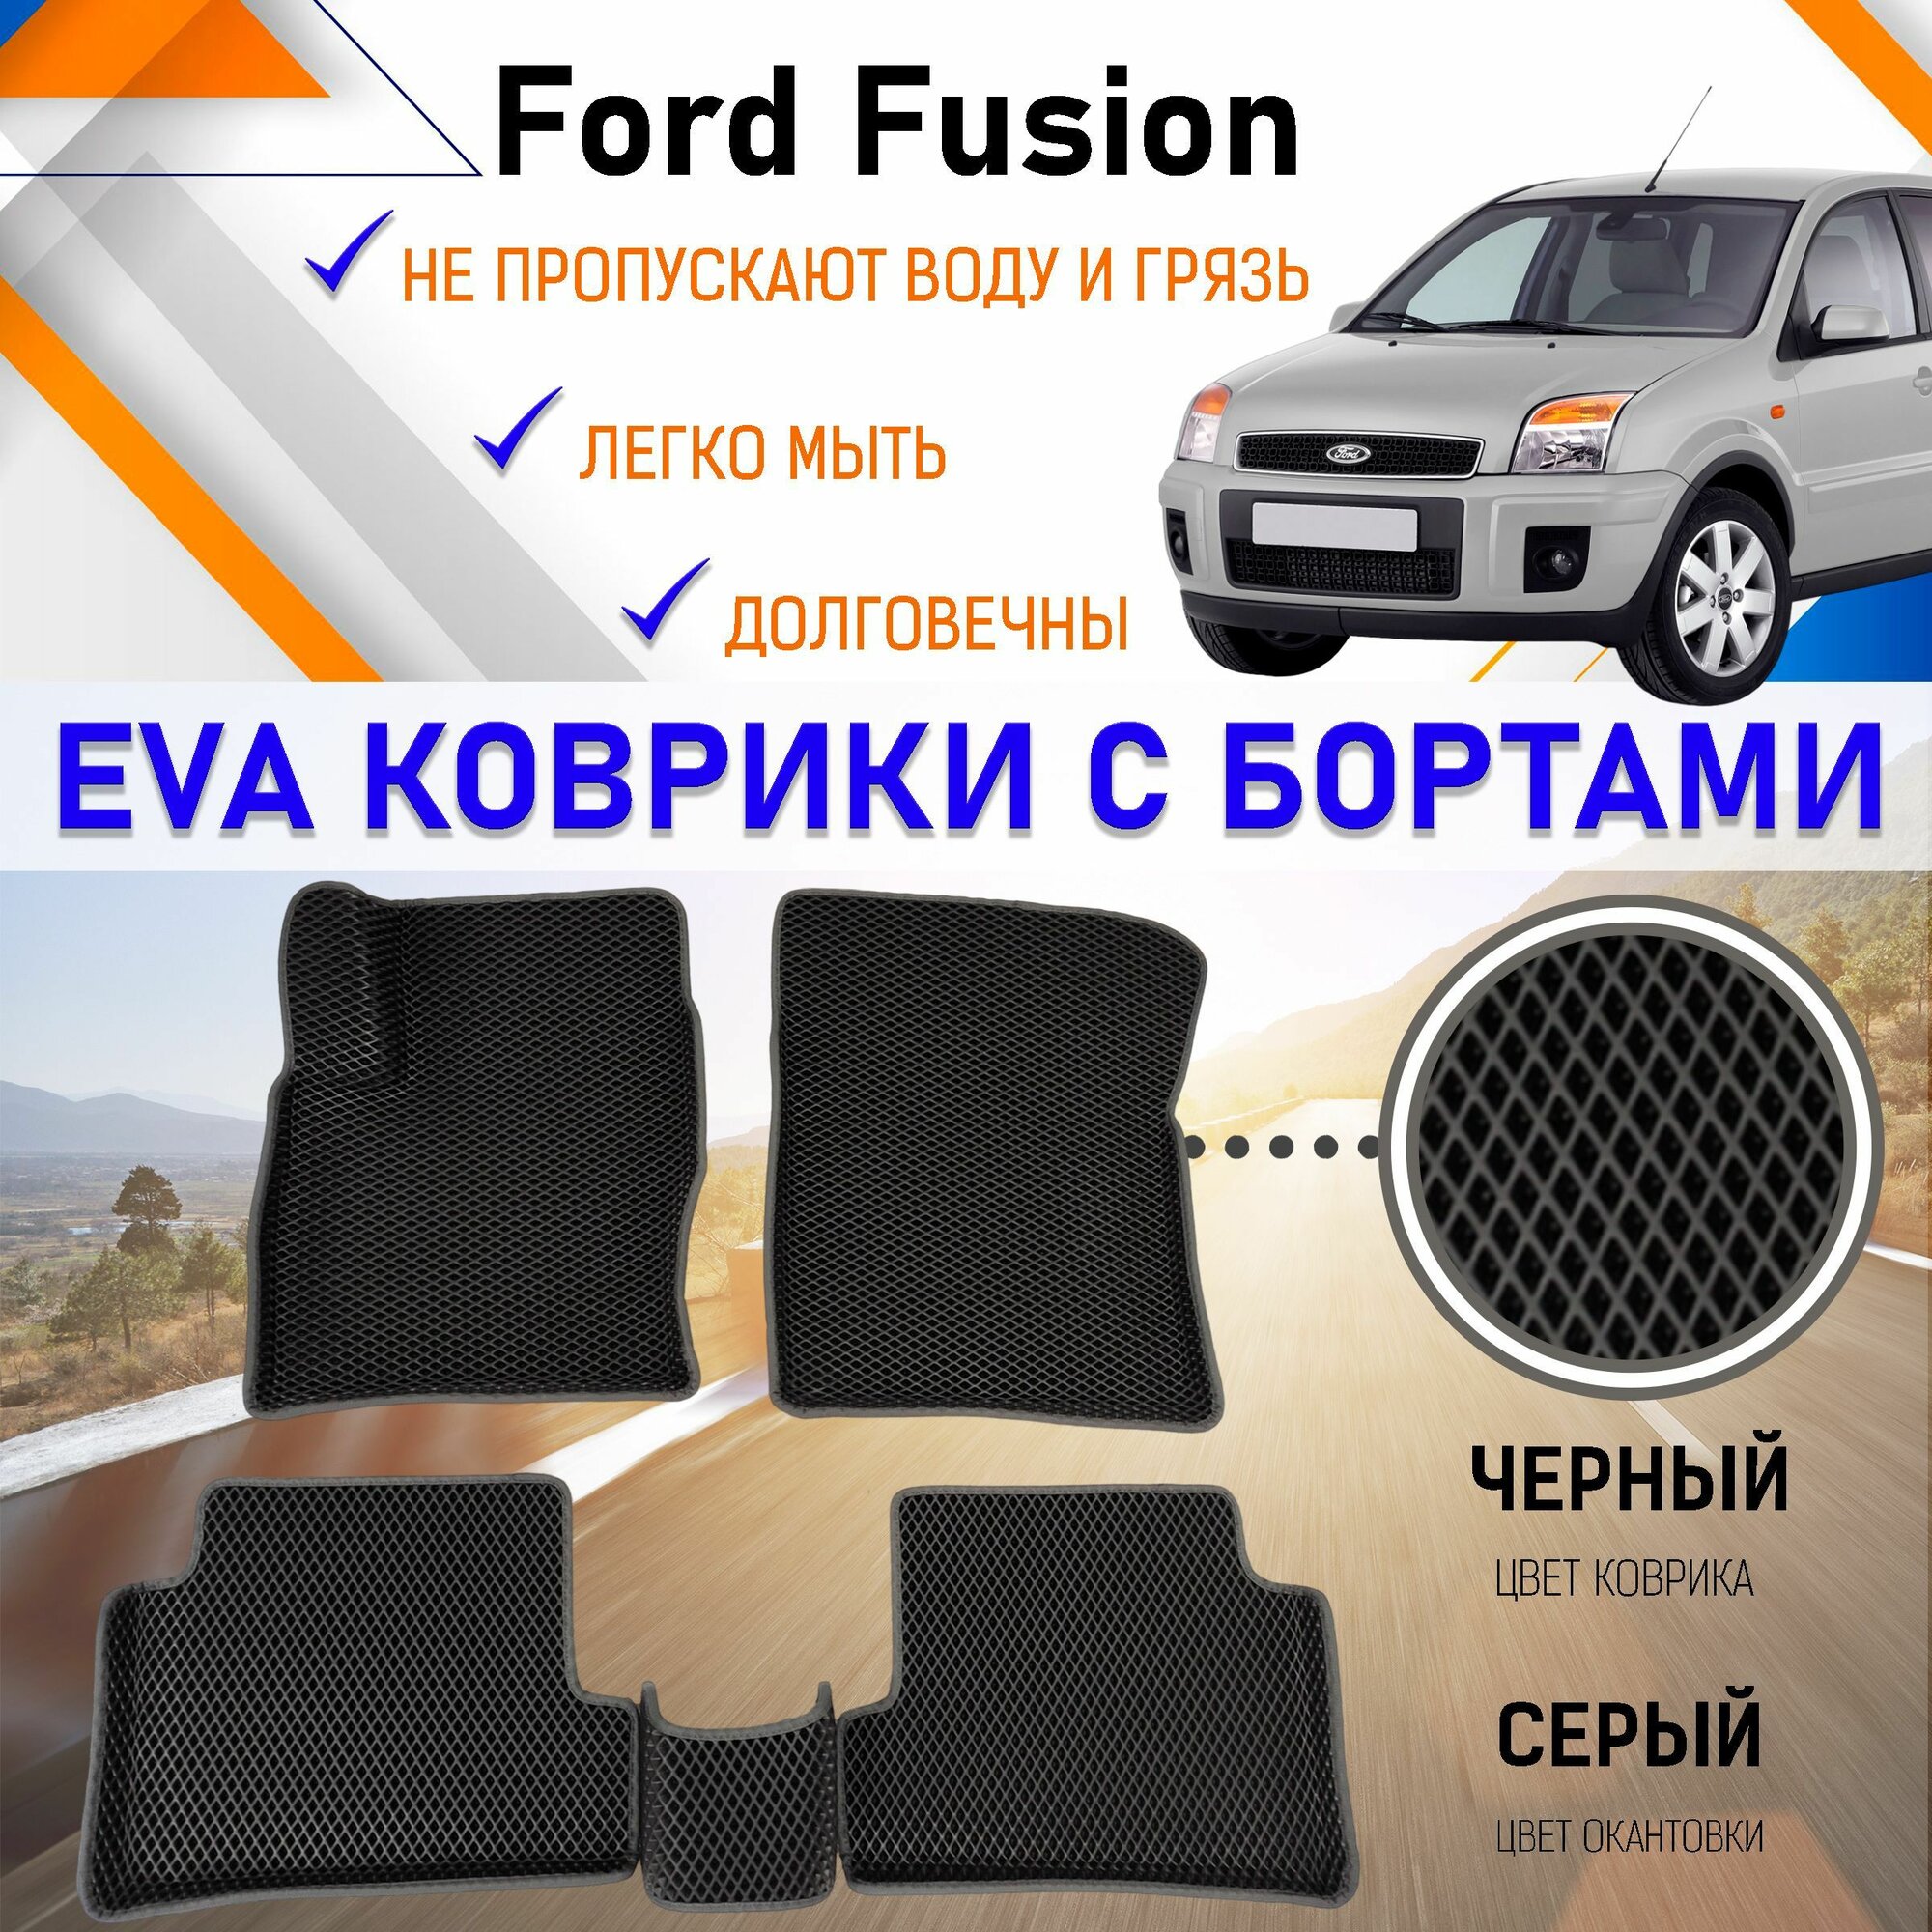 Автомобильные коврики ЕVA, EVO, ЭВО, ЭВА, ЕВА, ЕВО с бортами в салон машины Ford Fusion Форд Фьюжн, резиновый настил для защиты салона авто от грязи и воды